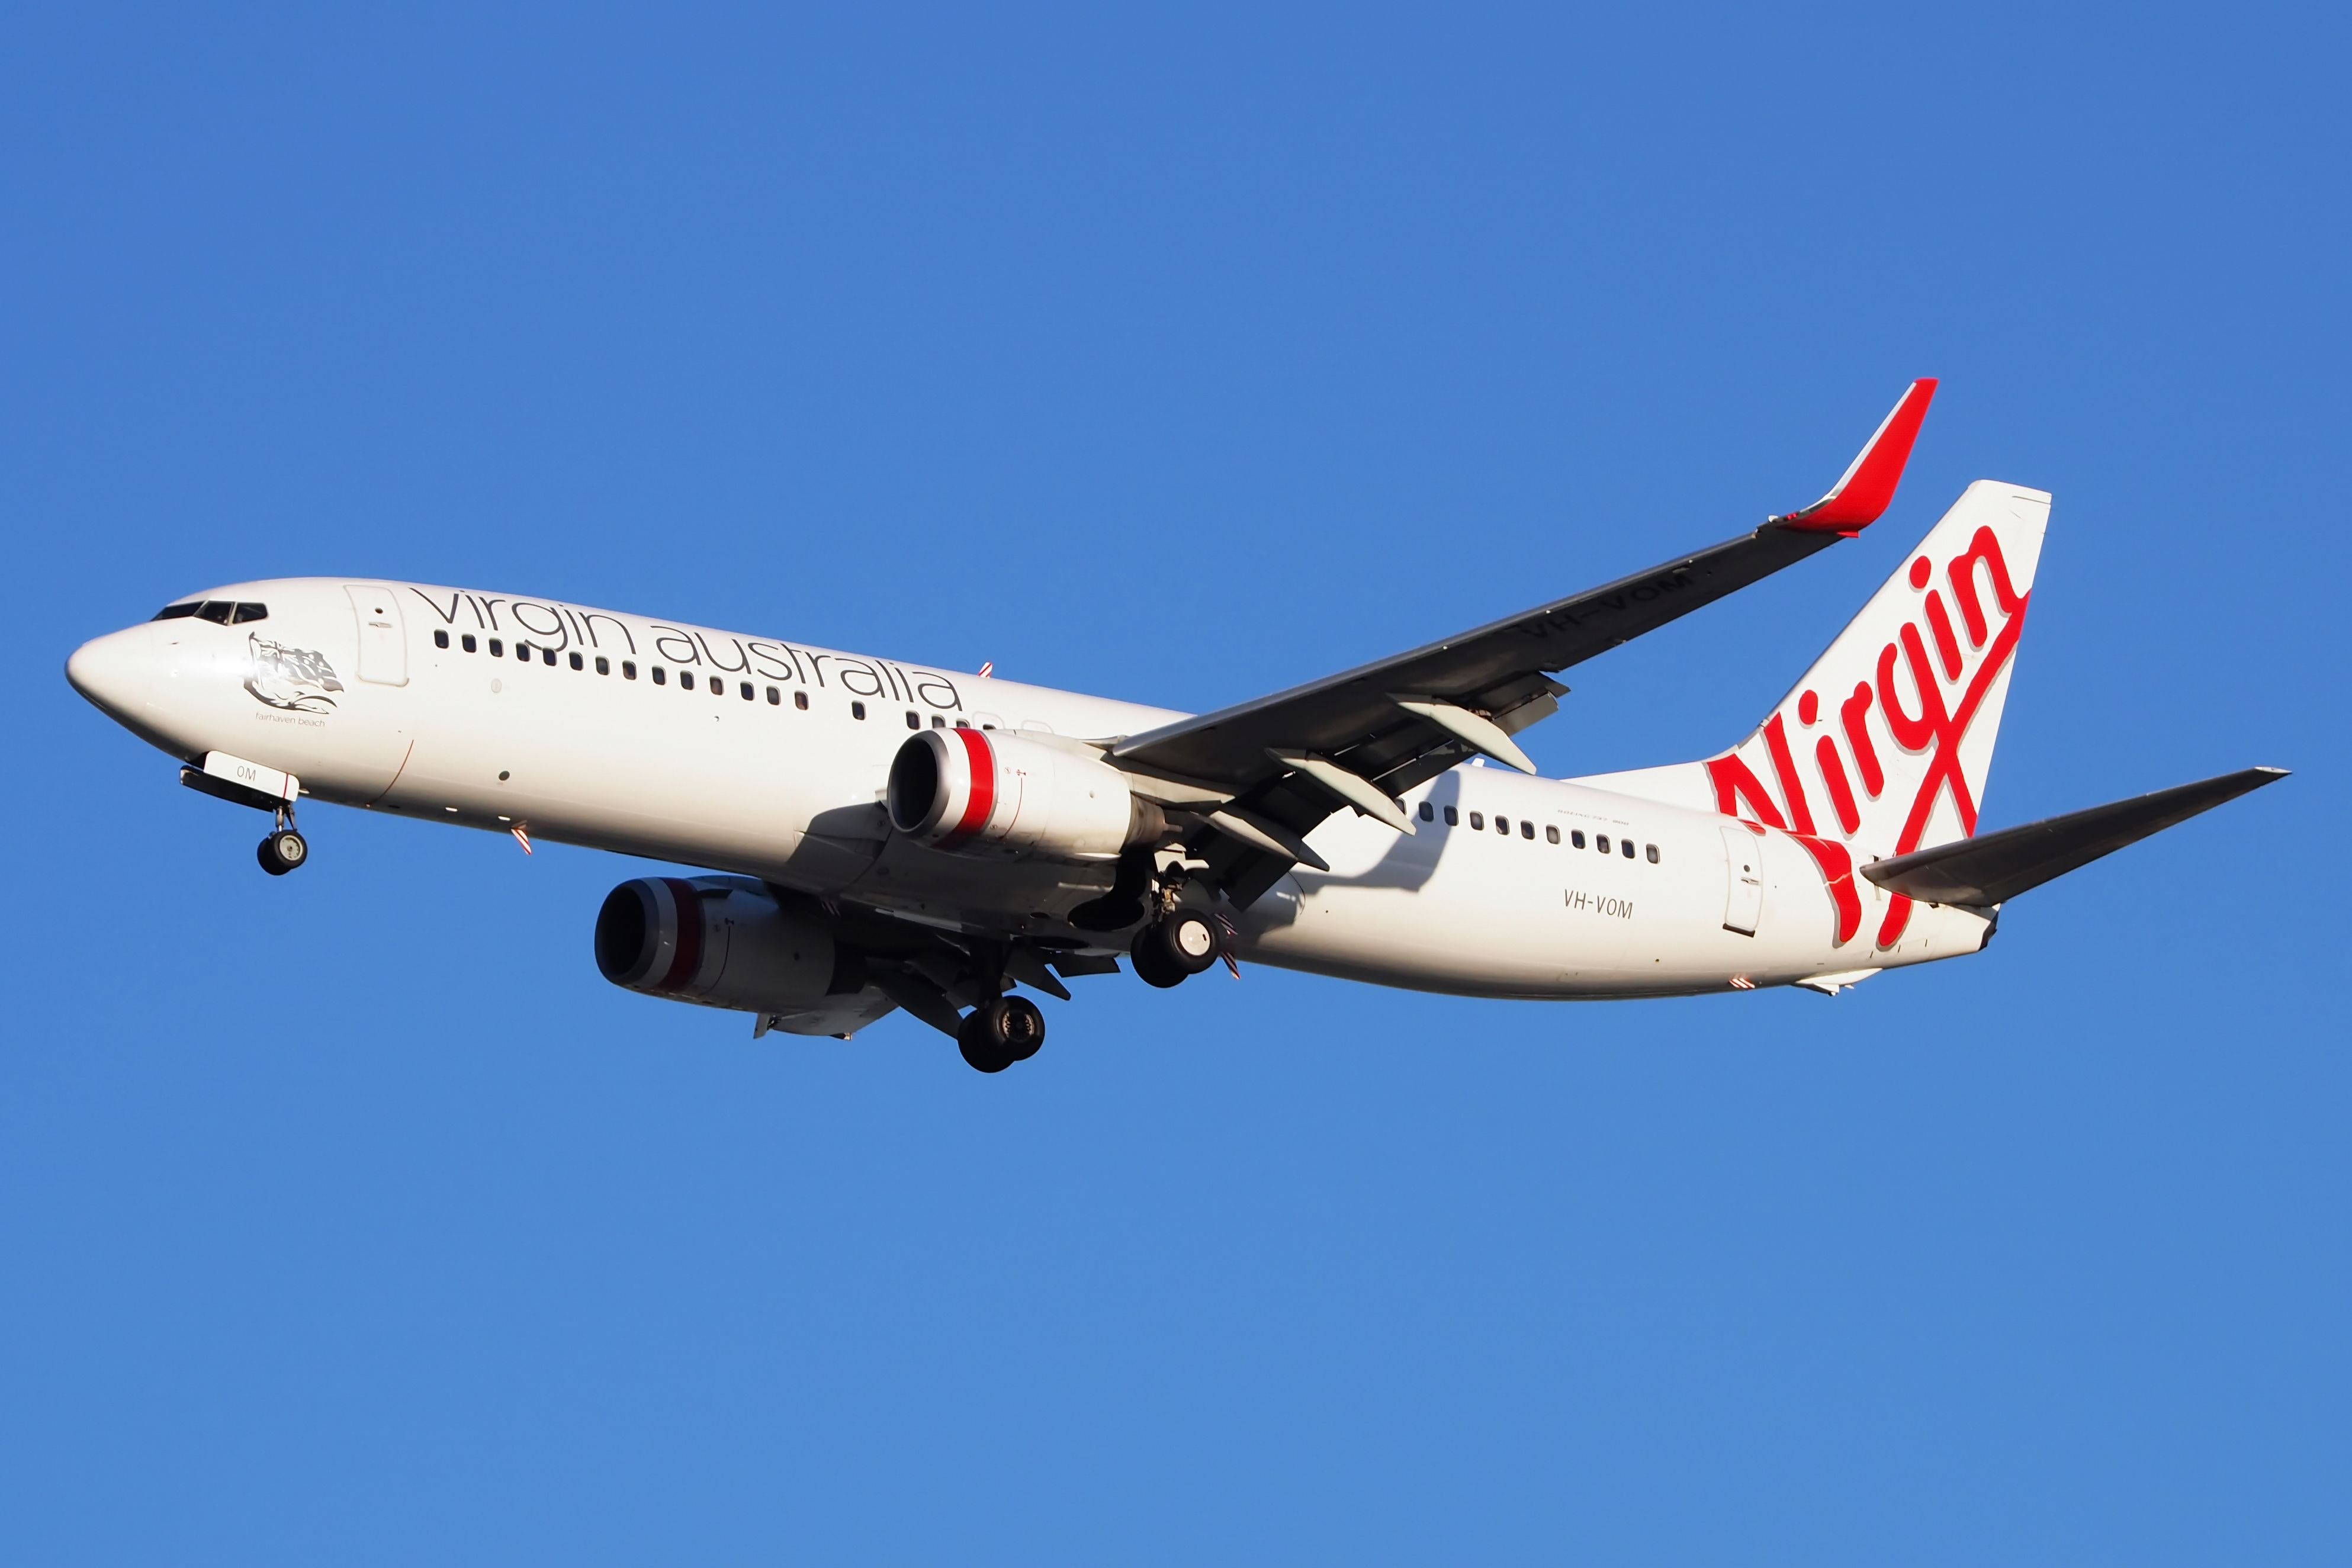 Virgin Australia Boeing 737-800 landing shutterstock_1464507701